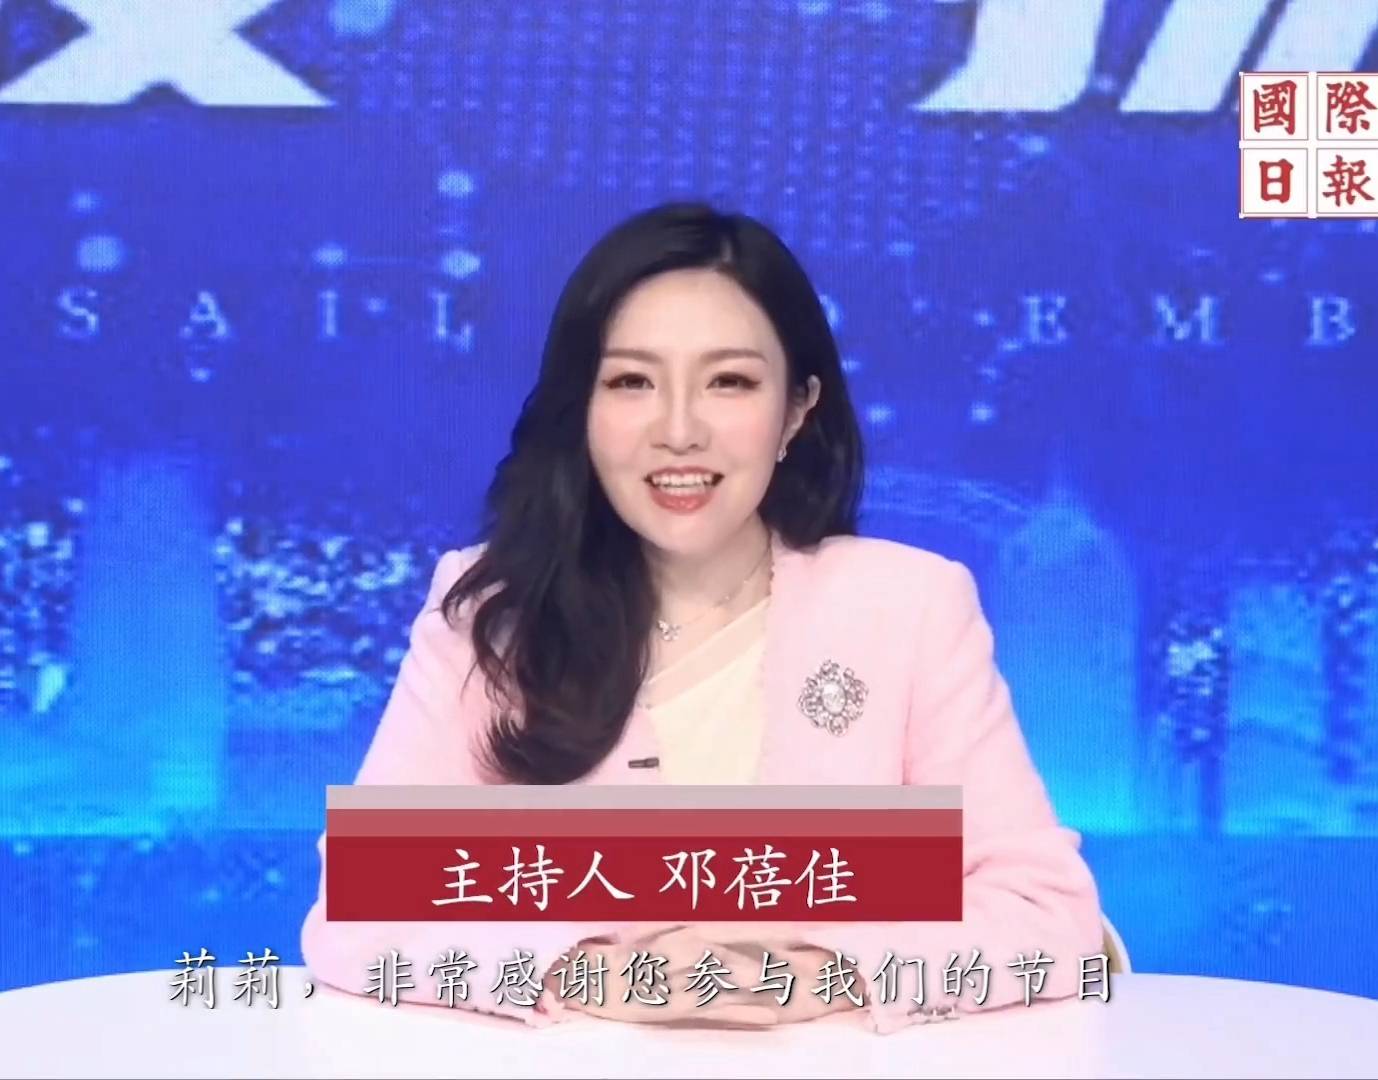 邓蓓佳 离巢TVB后，邓蓓佳曾主持内地访谈节目《滨海宁波·扬帆世界》。